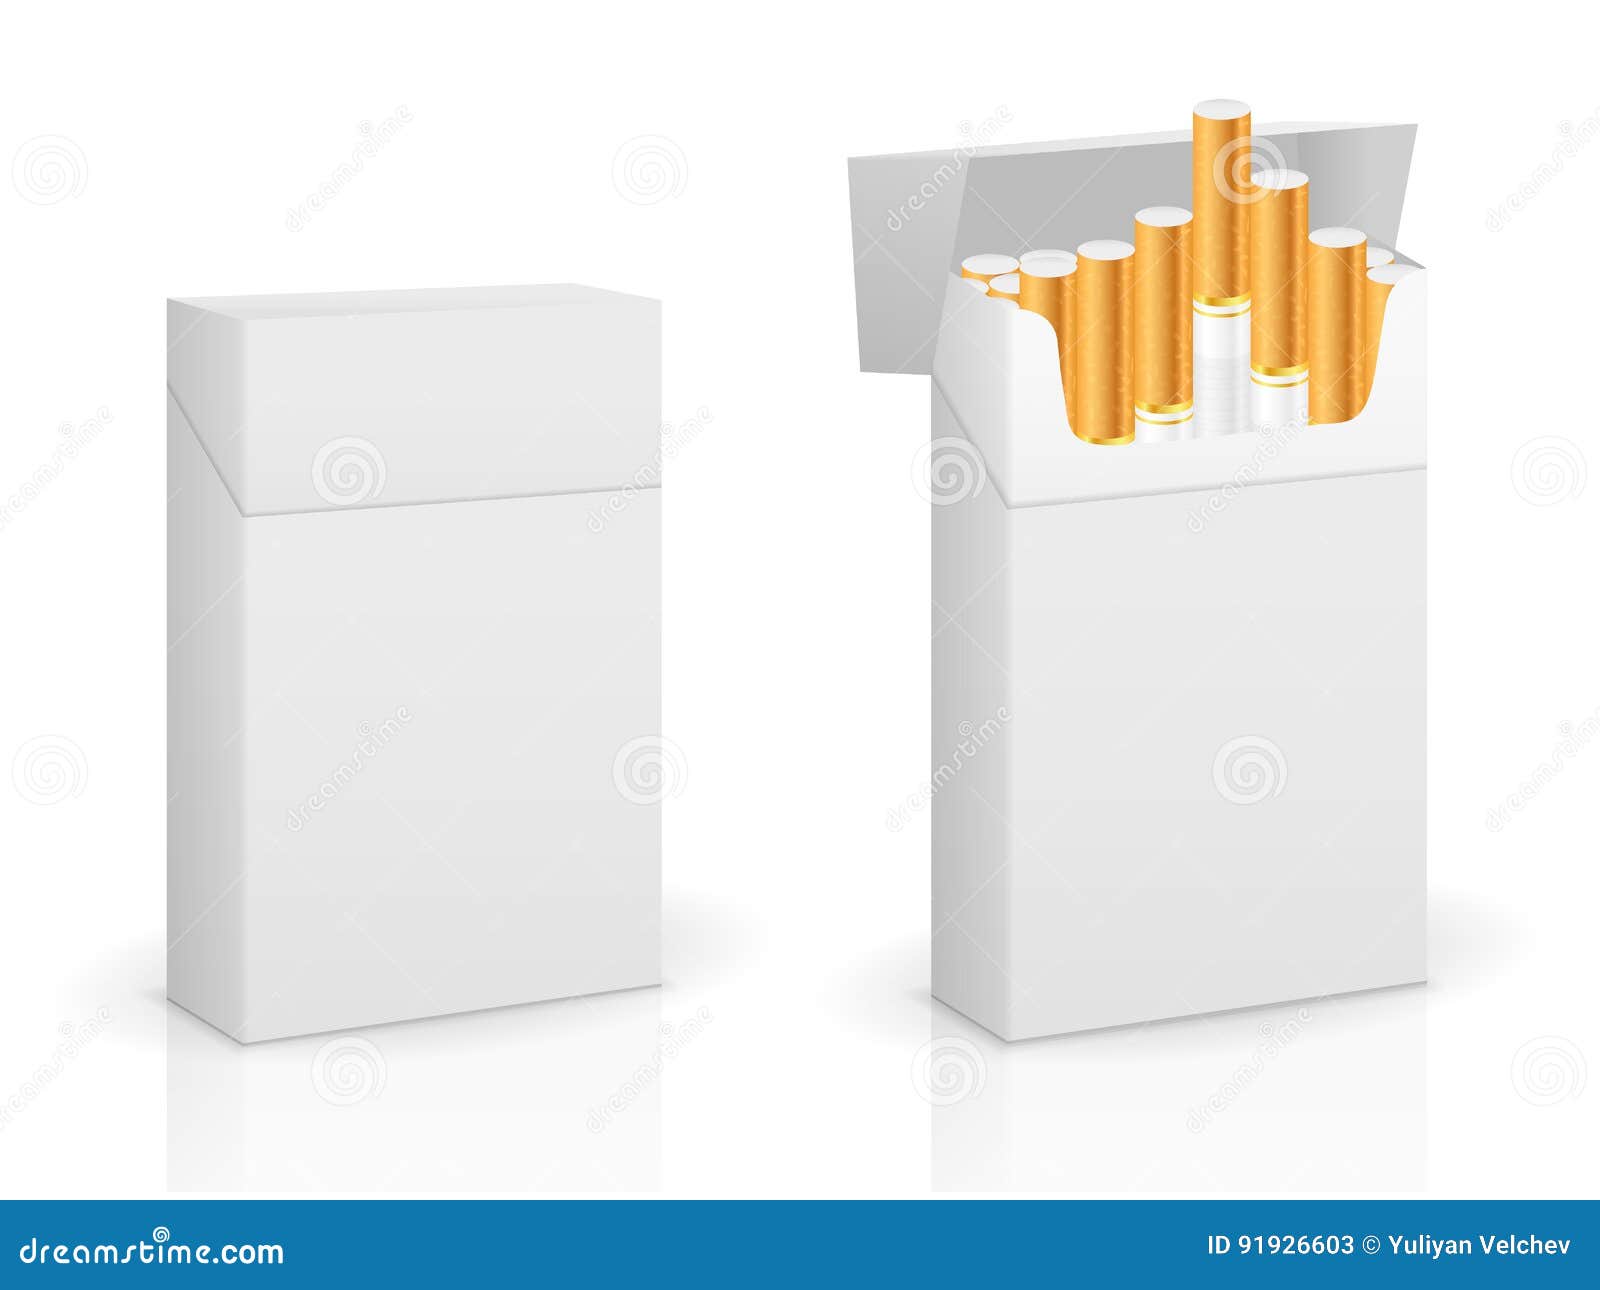 cigarette box set